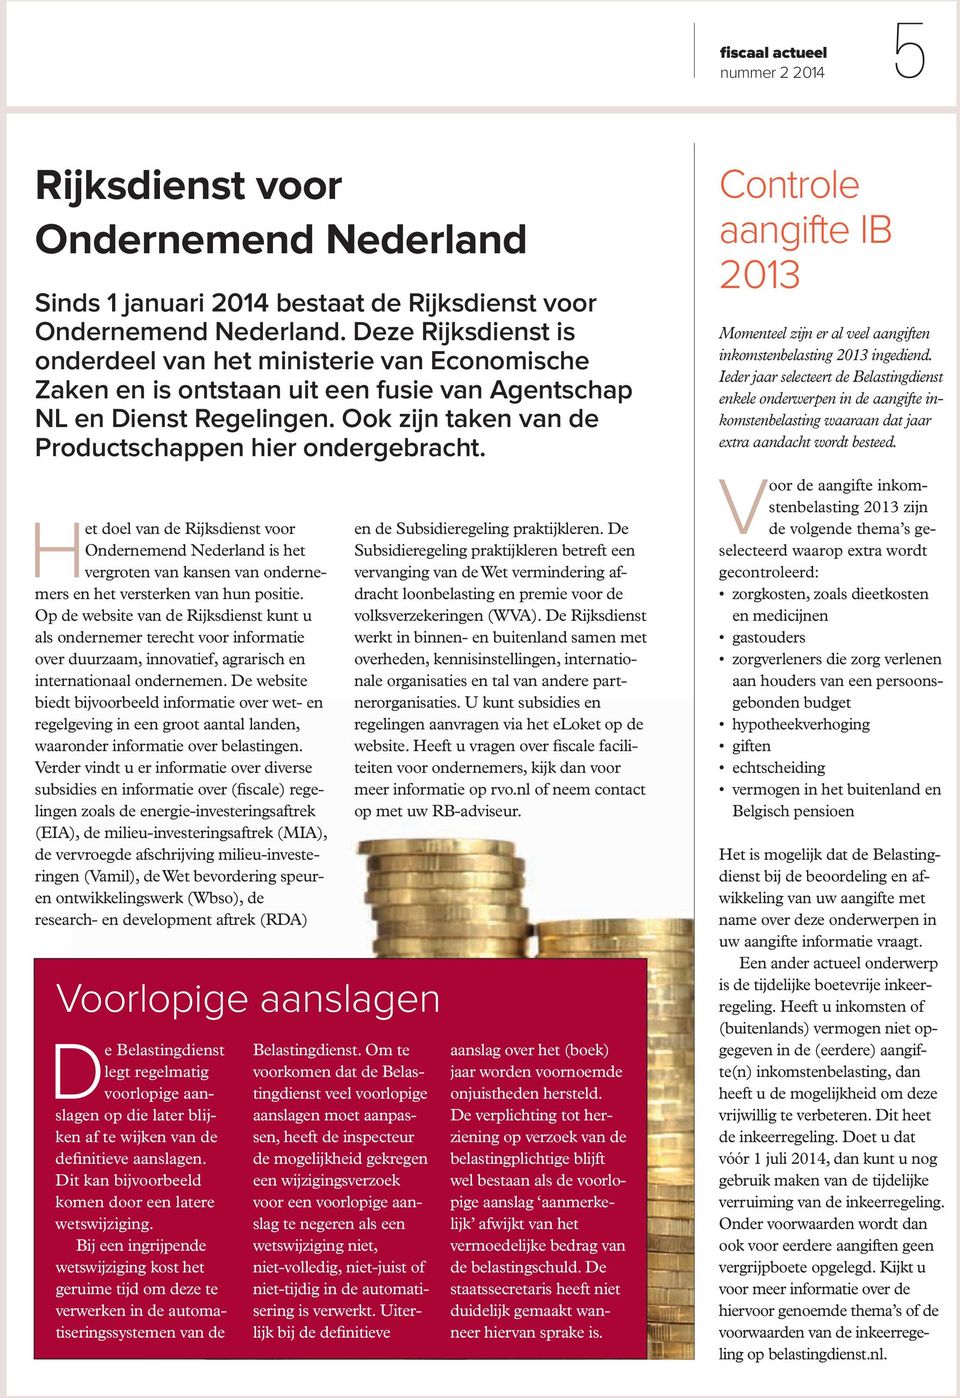 Het doel van de Rijksdienst voor Ondernemend Nederland is het vergroten van kansen van ondernemers en het versterken van hun positie.